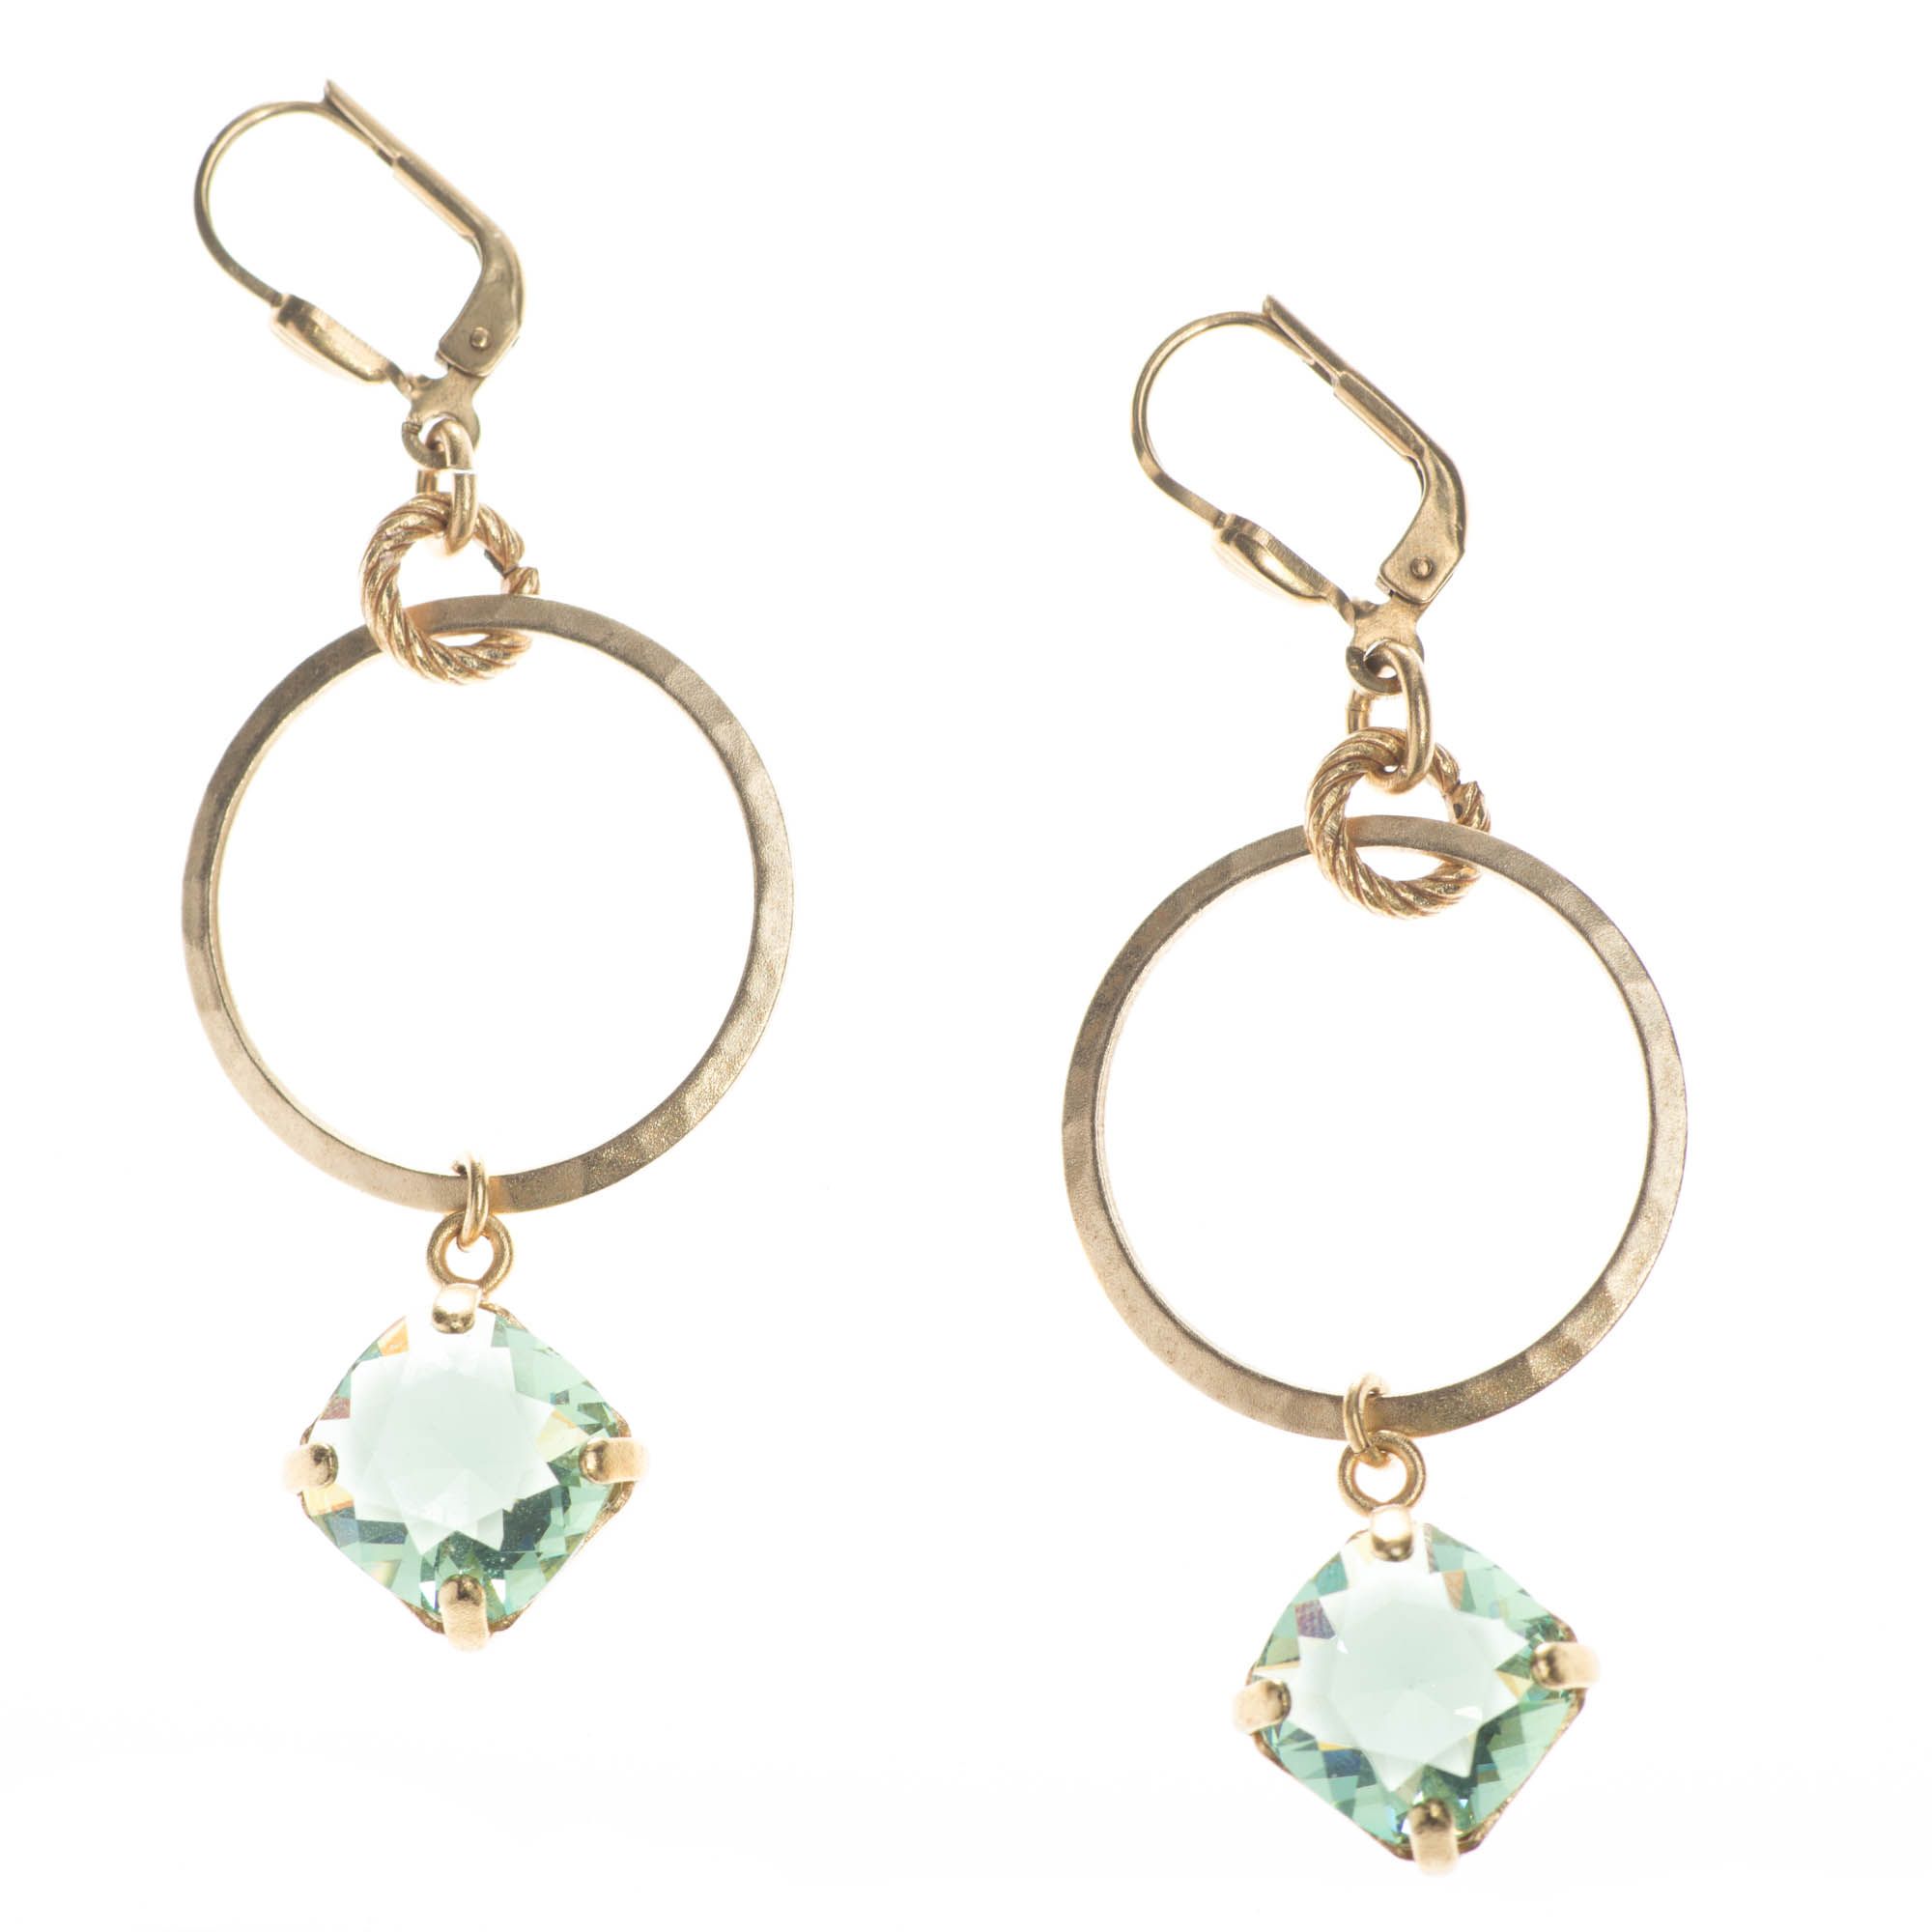 LV Gold Plated hoop earrings - Silver  Hoop earrings, Earrings, Earrings  outfit